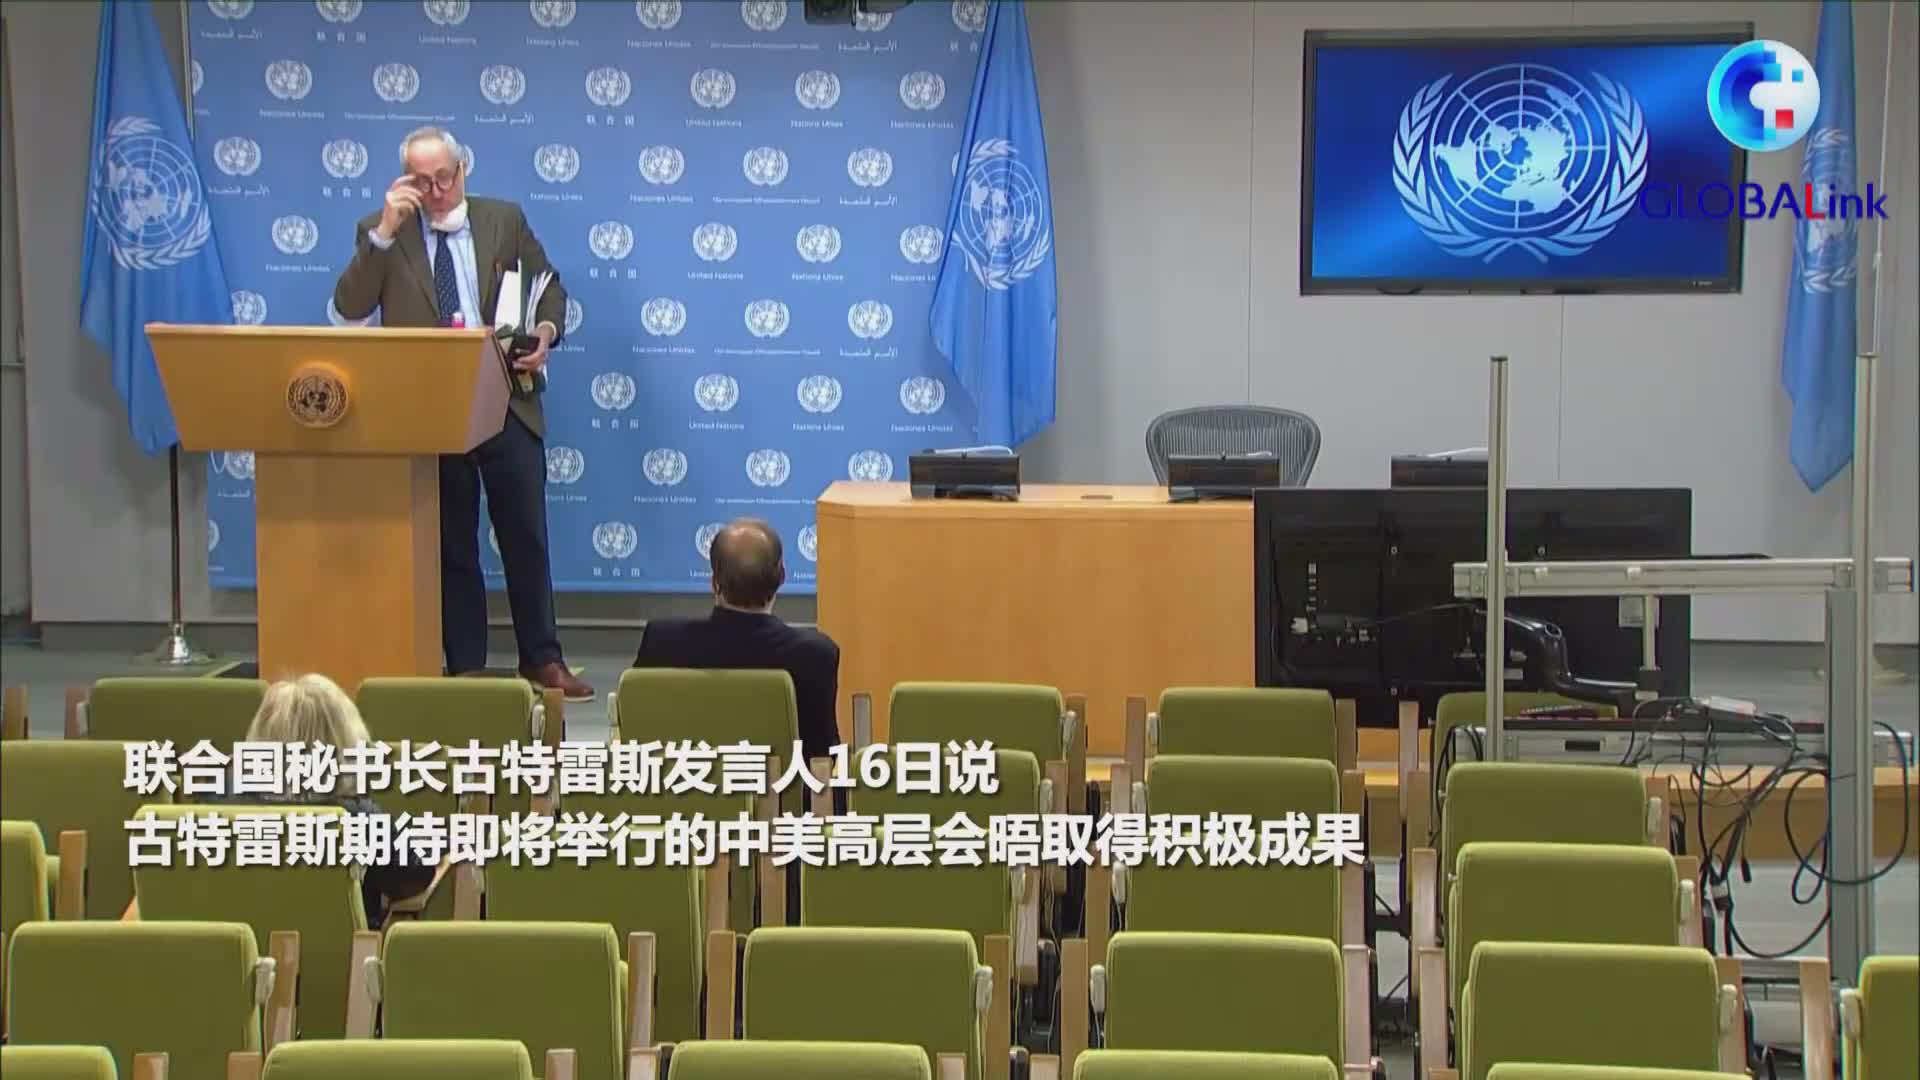 联合国秘书长期待中美高层会晤取得积极成果